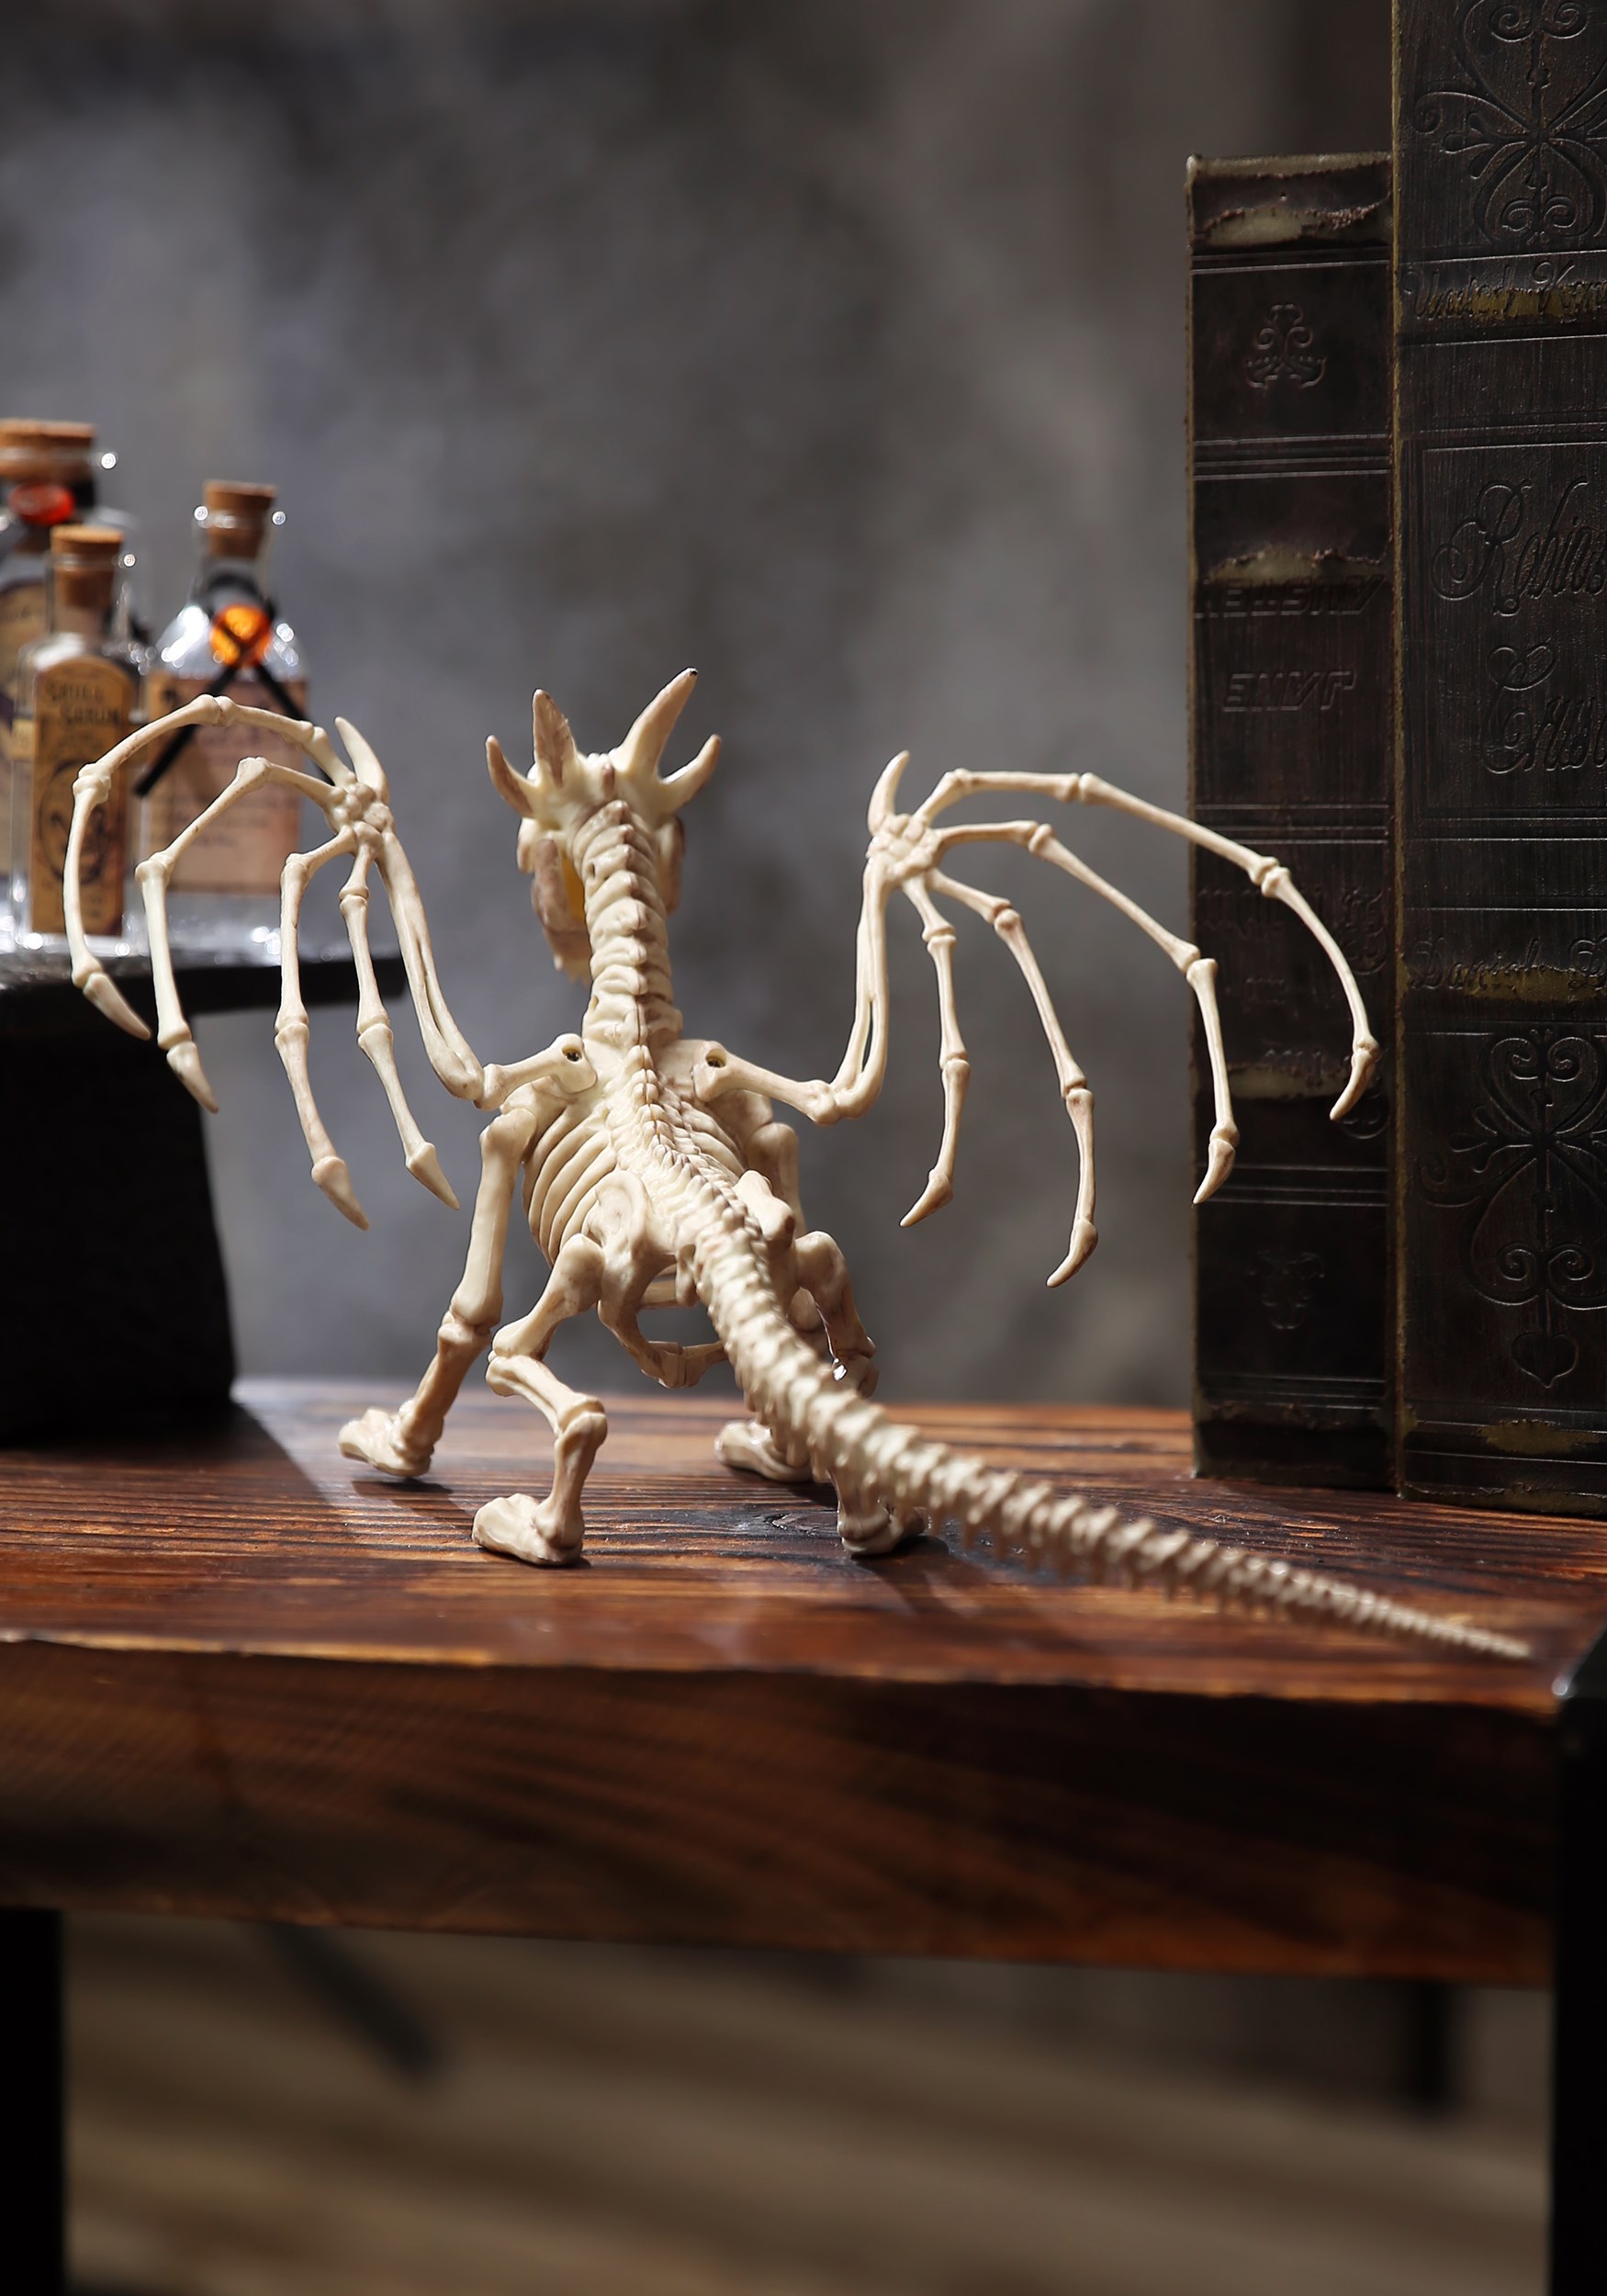 Skeleton Dragon Prop 9" 